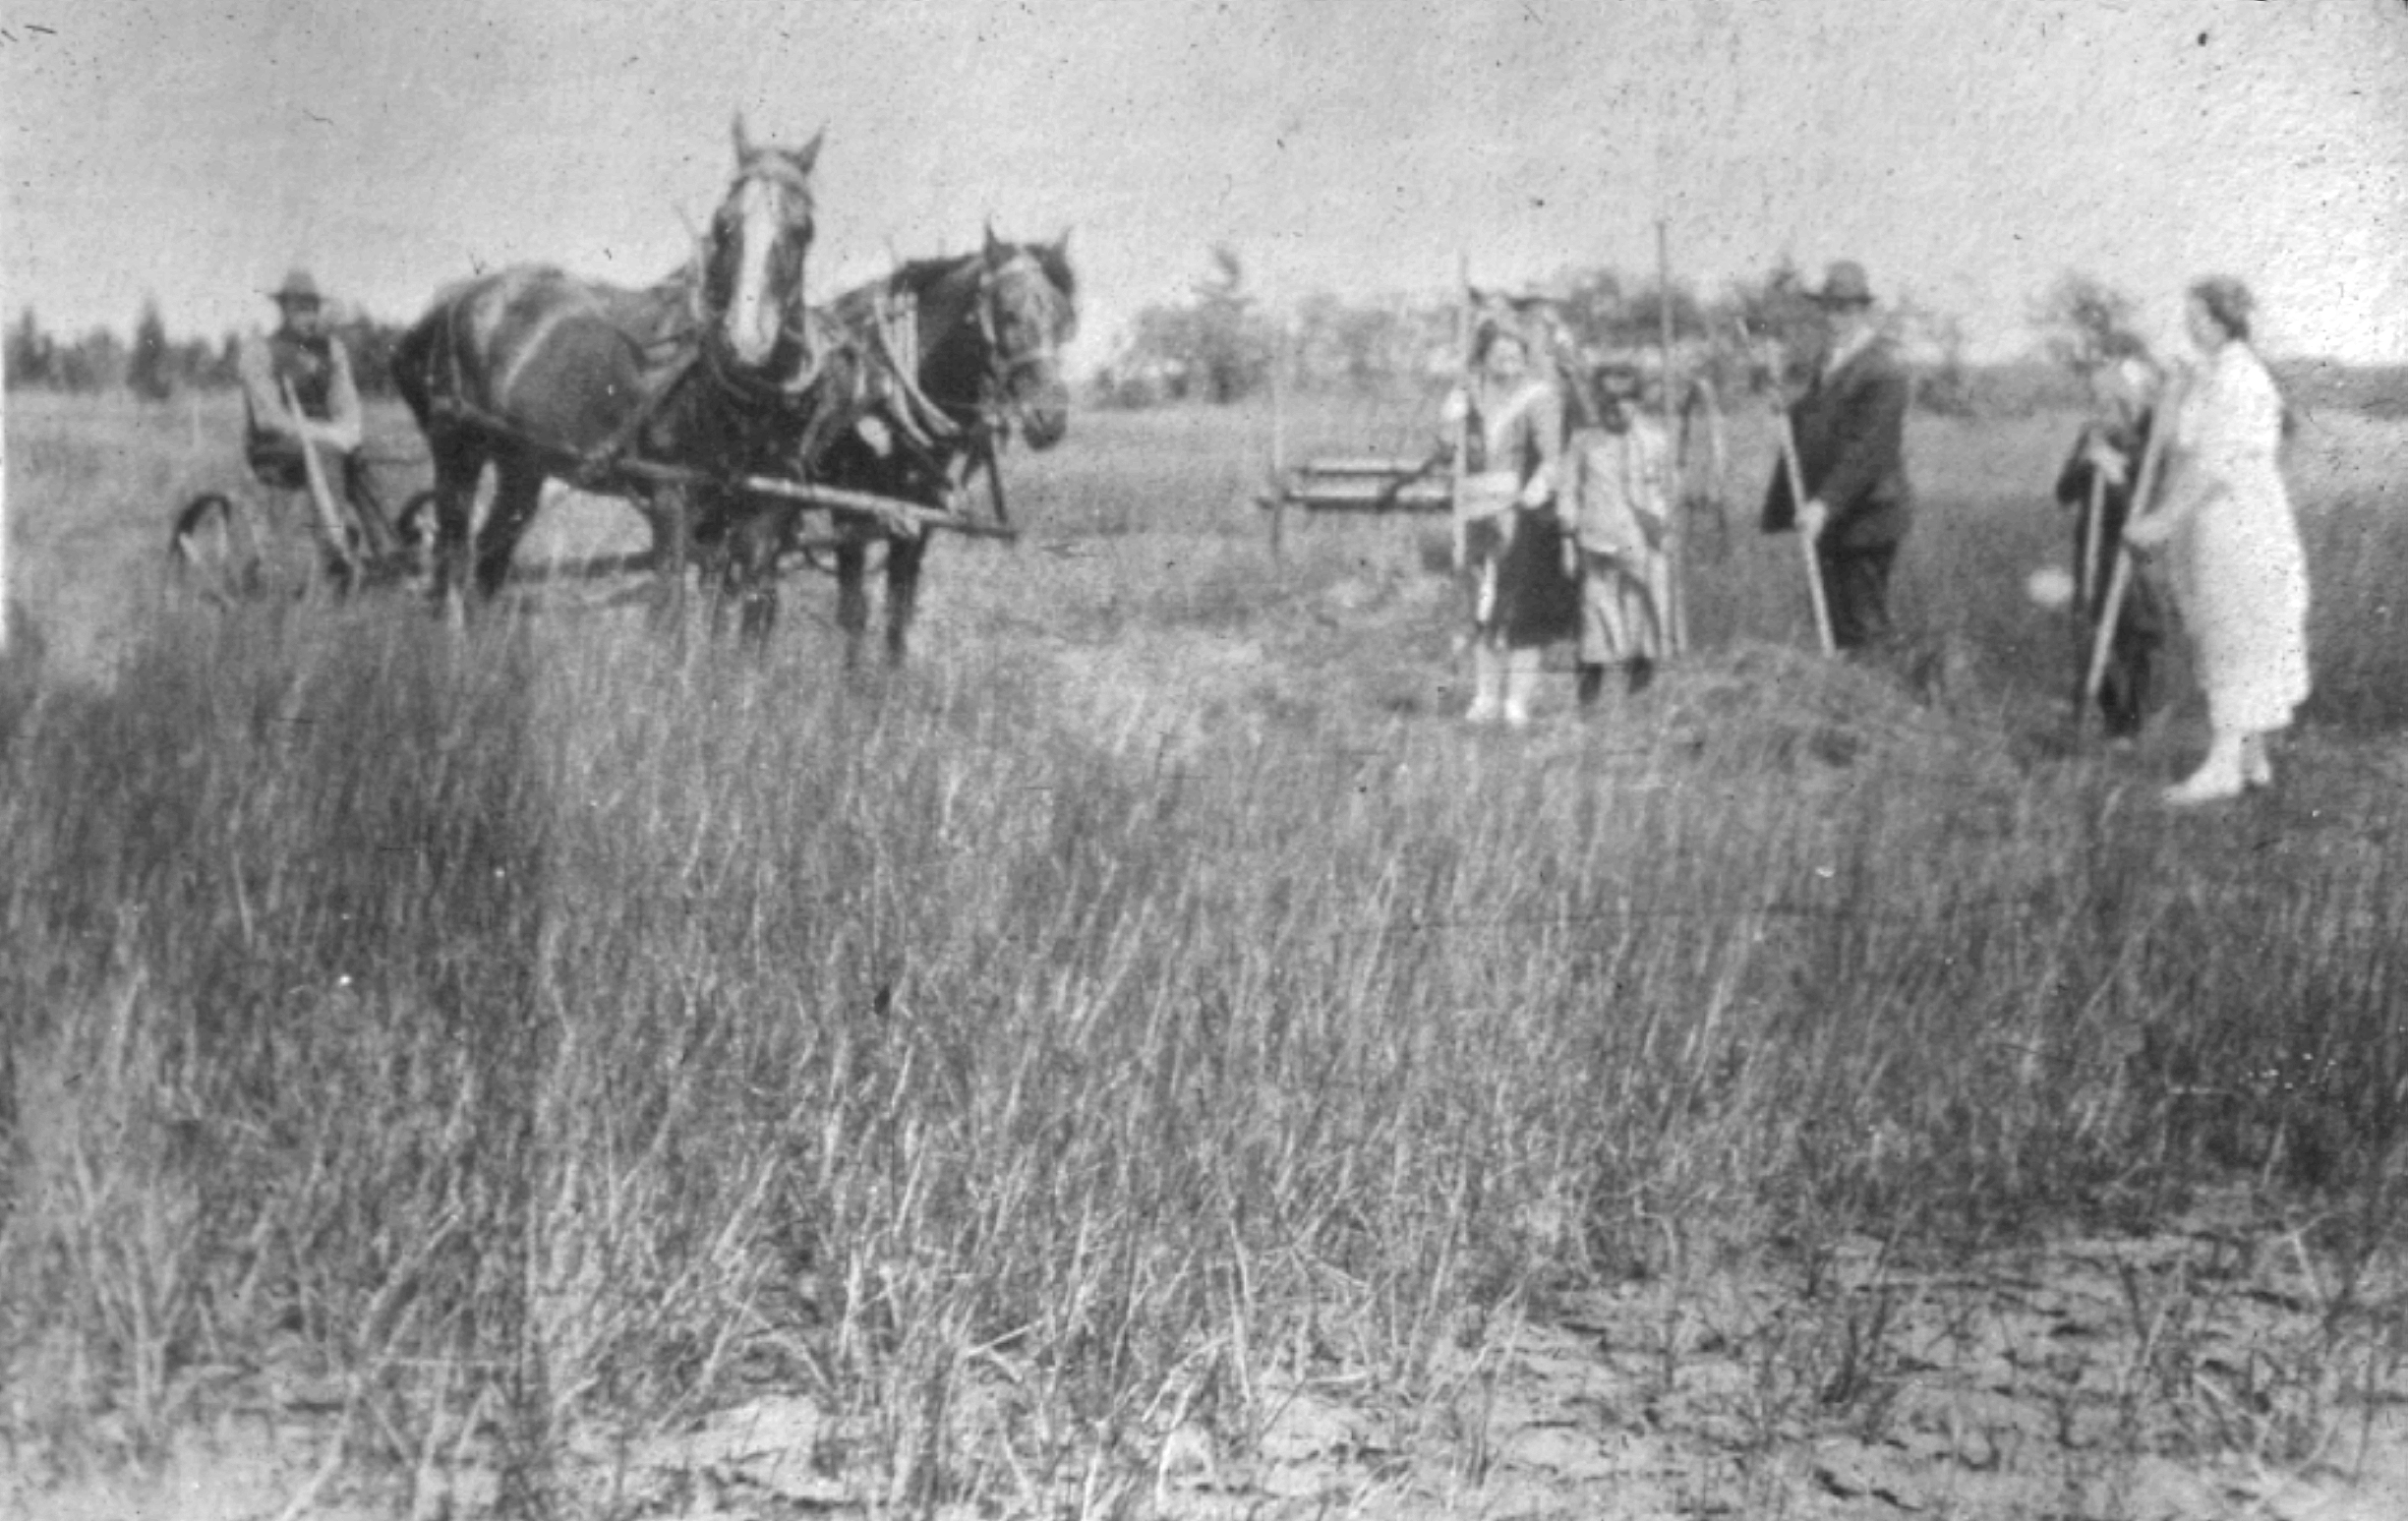 Un groupe de personnes coupe du foin et une personne est assise sur une tondeuse tirée par un cheval.